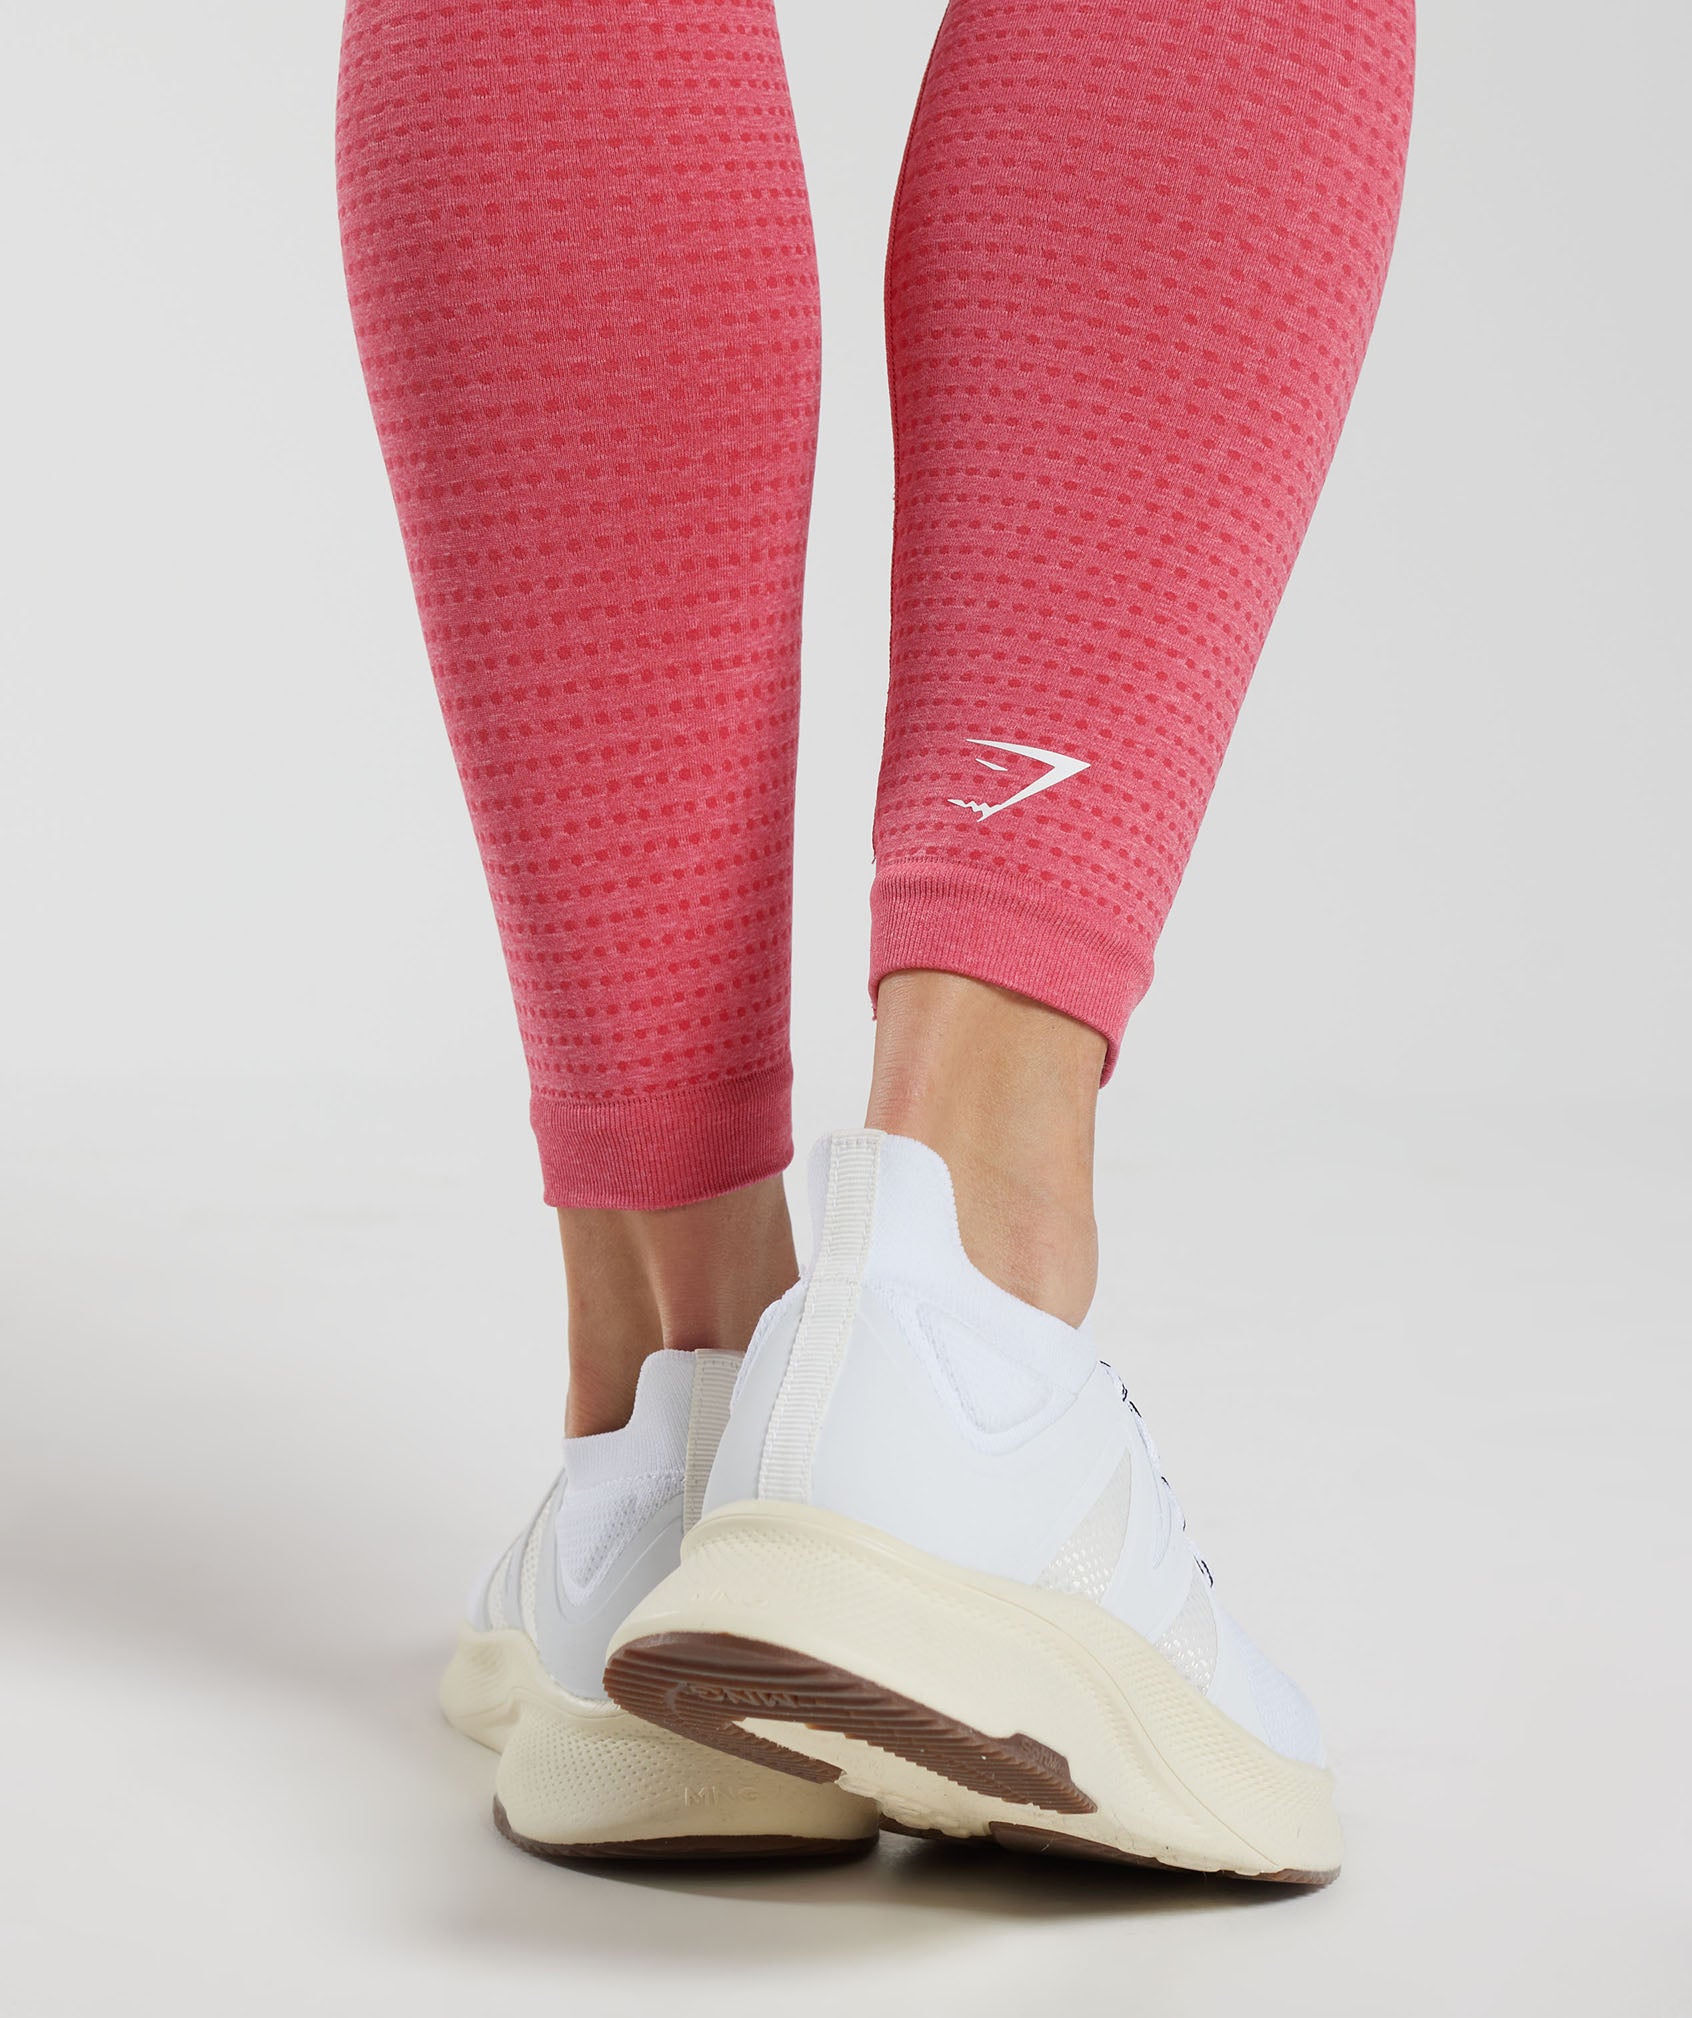 Gymshark Vital Seamless Legging - $28 - From Victoria